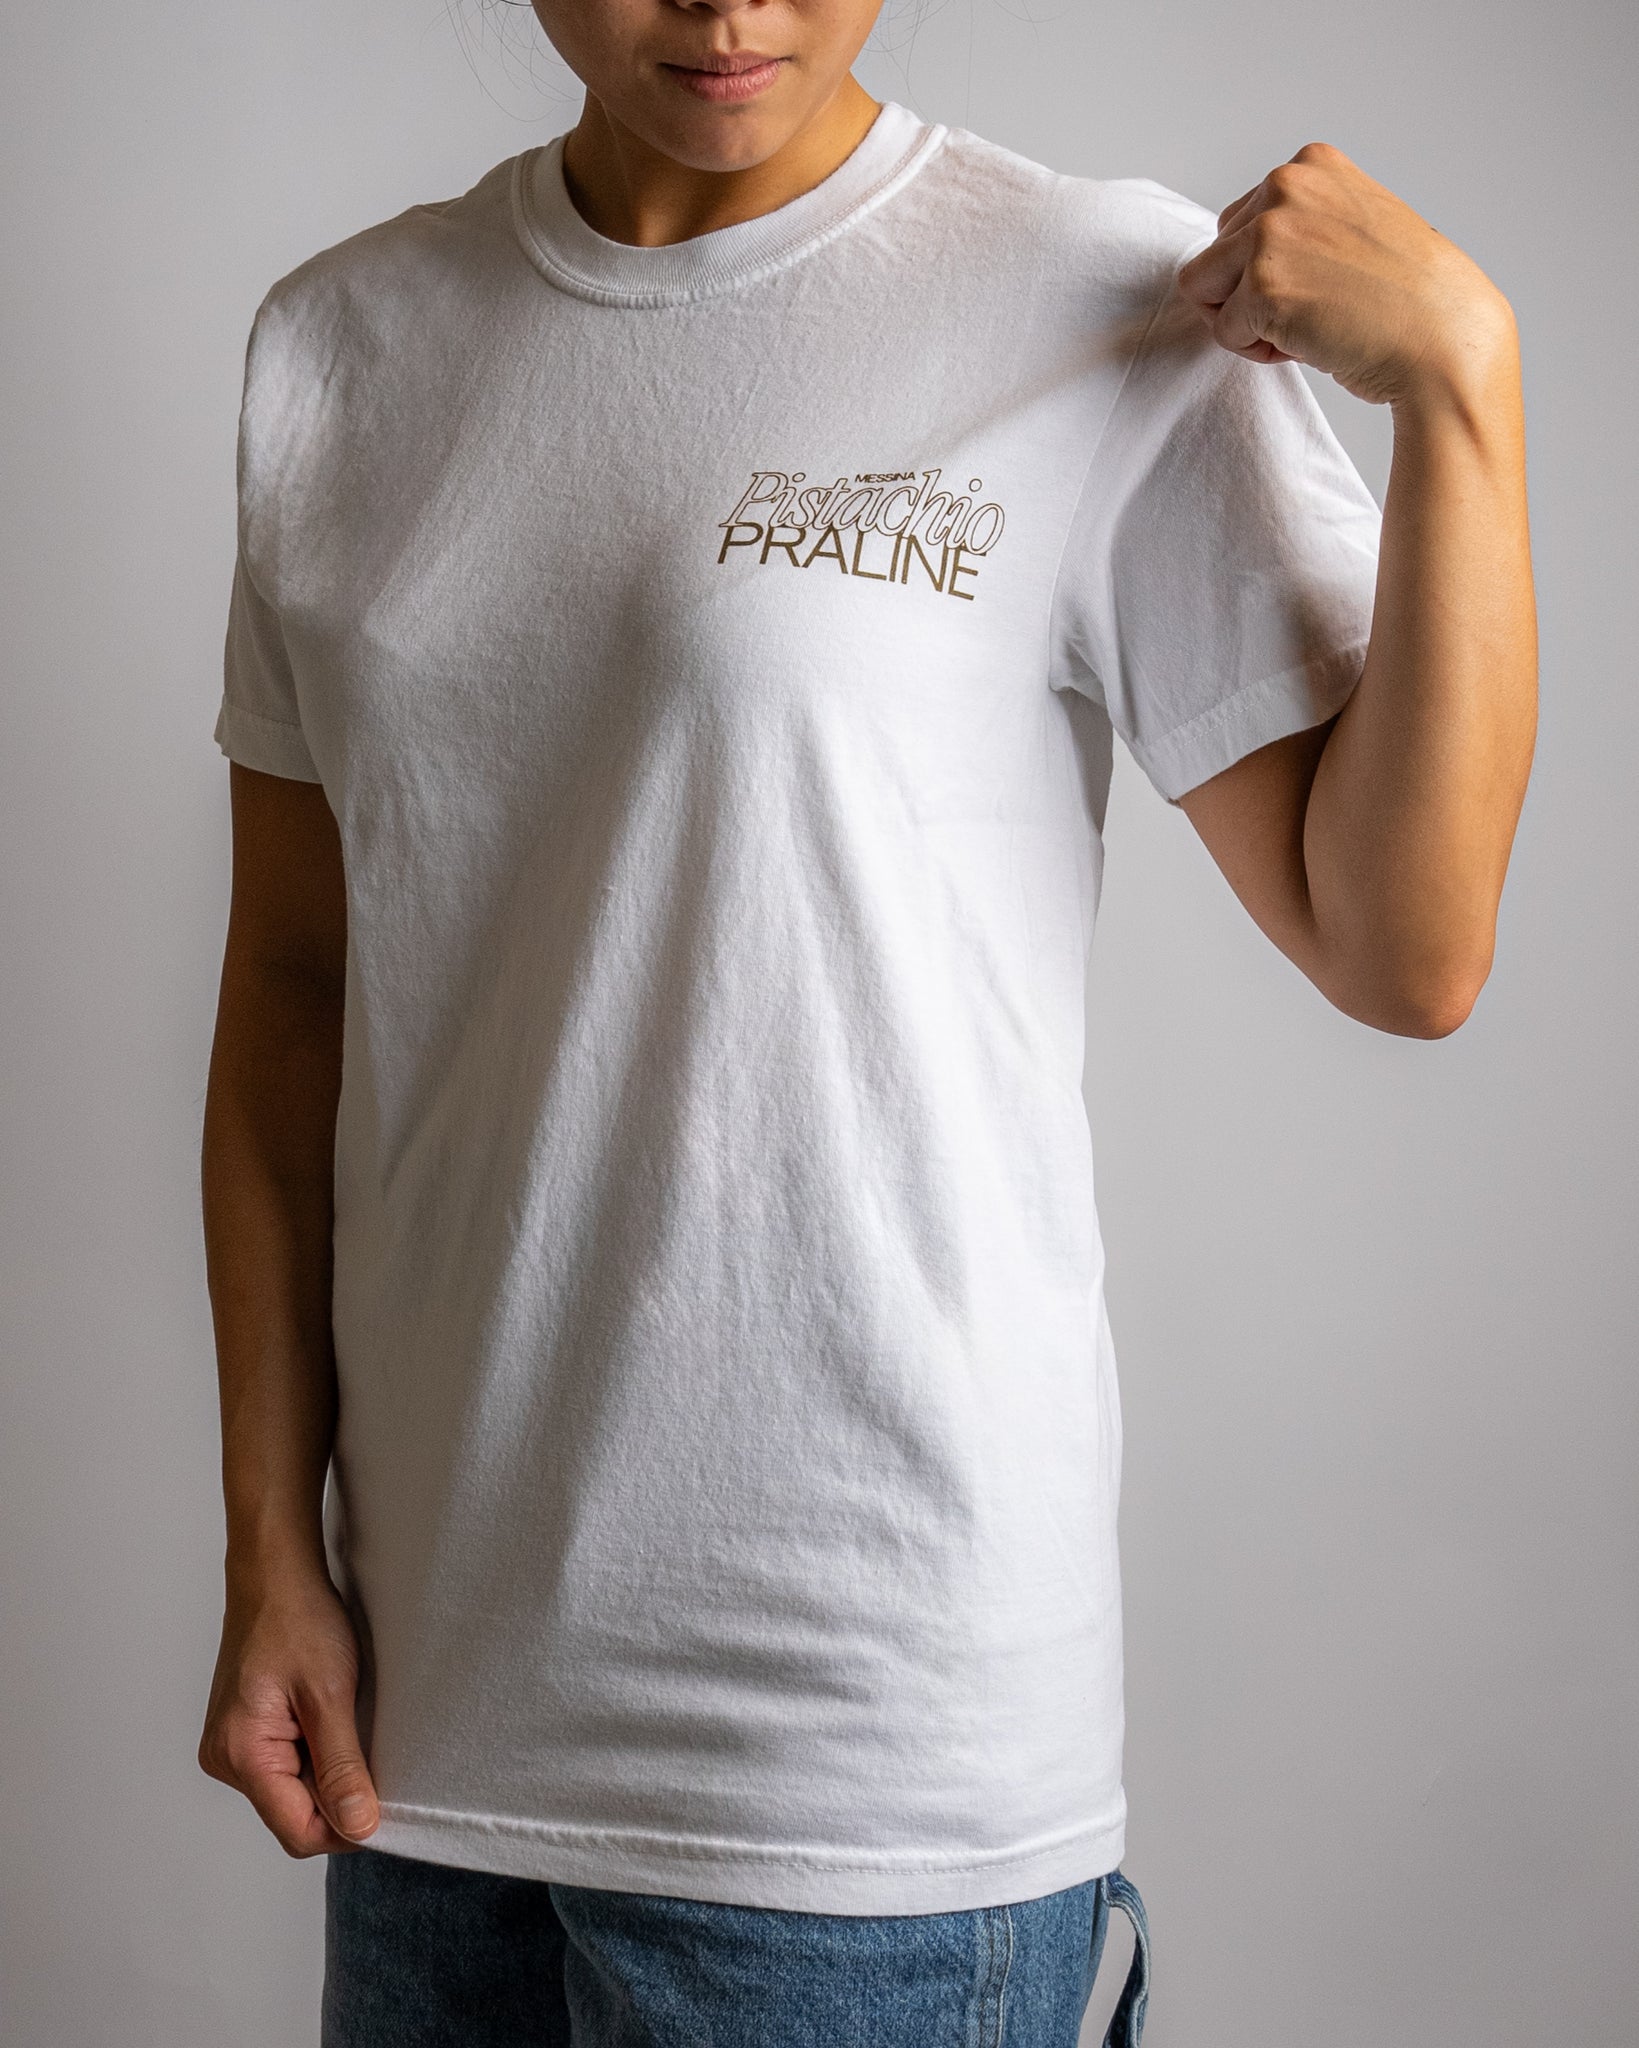 Pistachio Praline - Classics T-Shirt